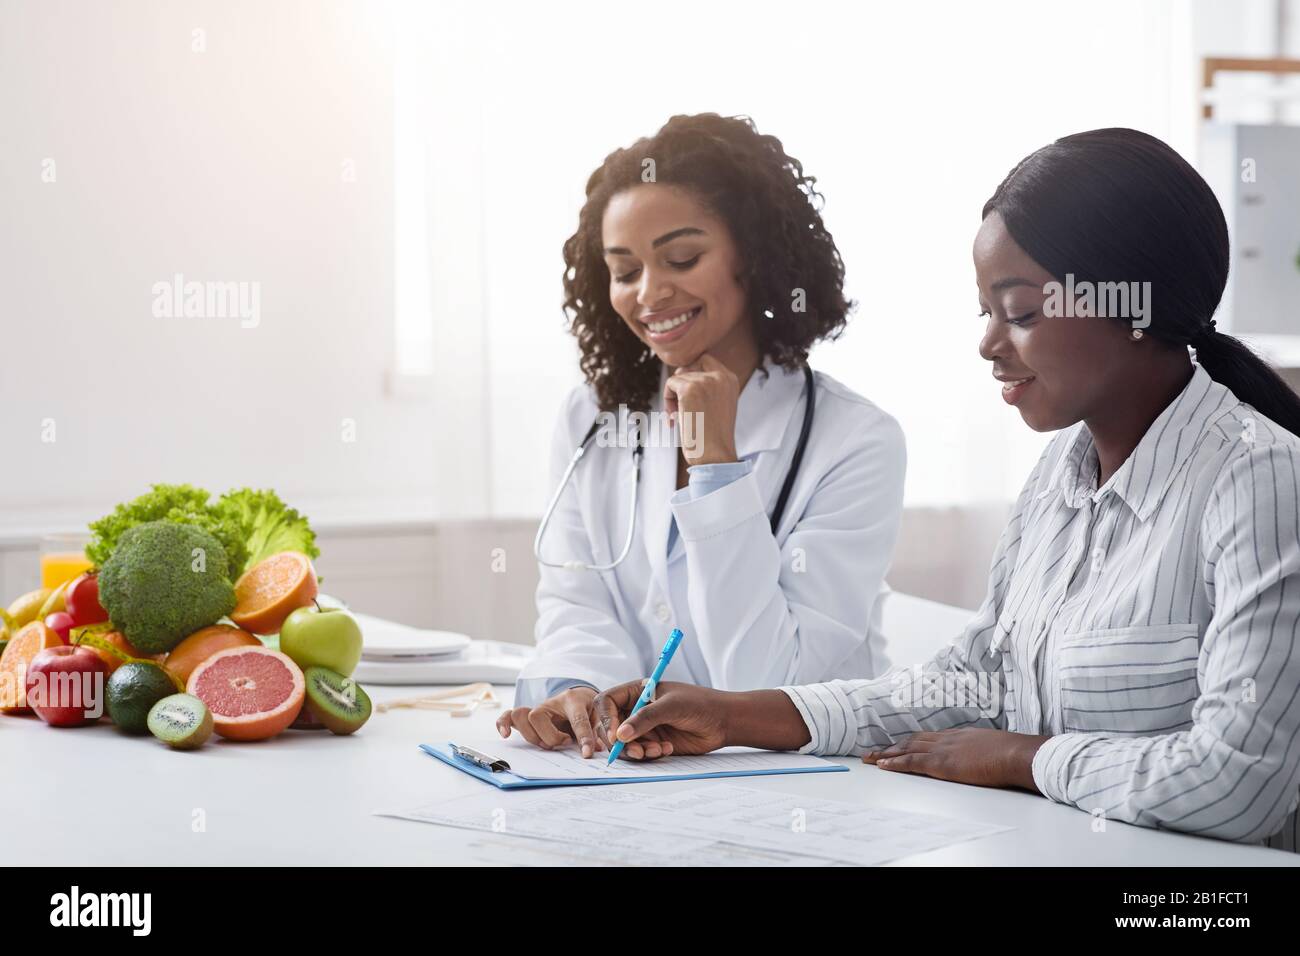 Femme noire patient de formulaire nutritionniste pendant la consultation Banque D'Images